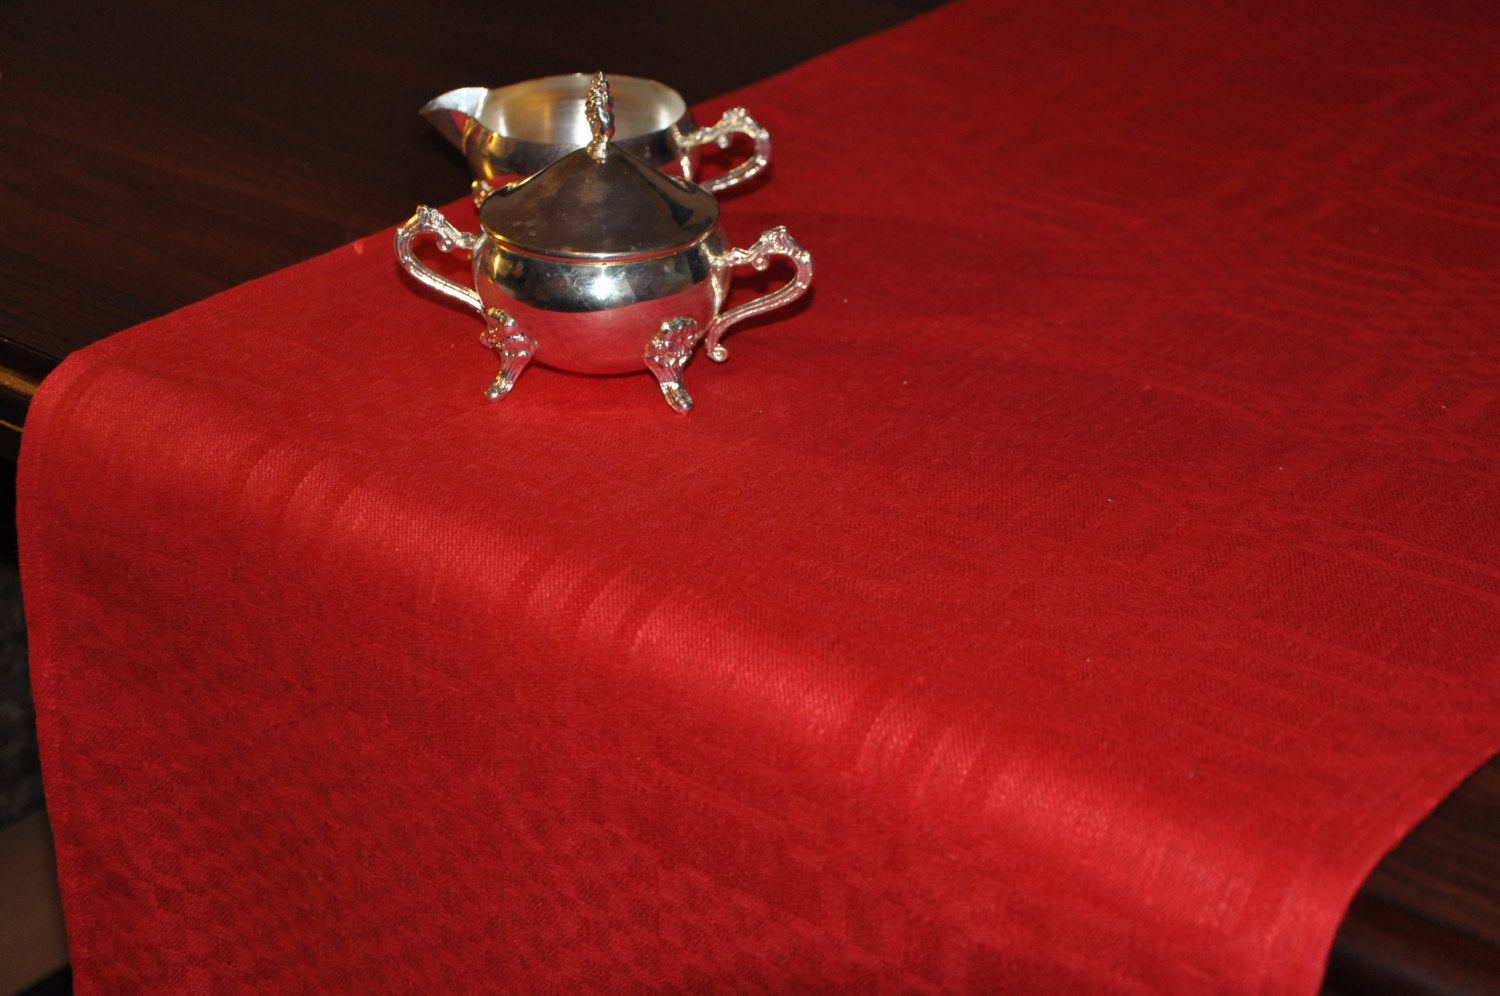 Linen Tablerunner In Deep Crimson Red Linen/ Table Cover Linen/ Linen Christmas Gift/ Linen Christmas Decor/ Vintage Christmas